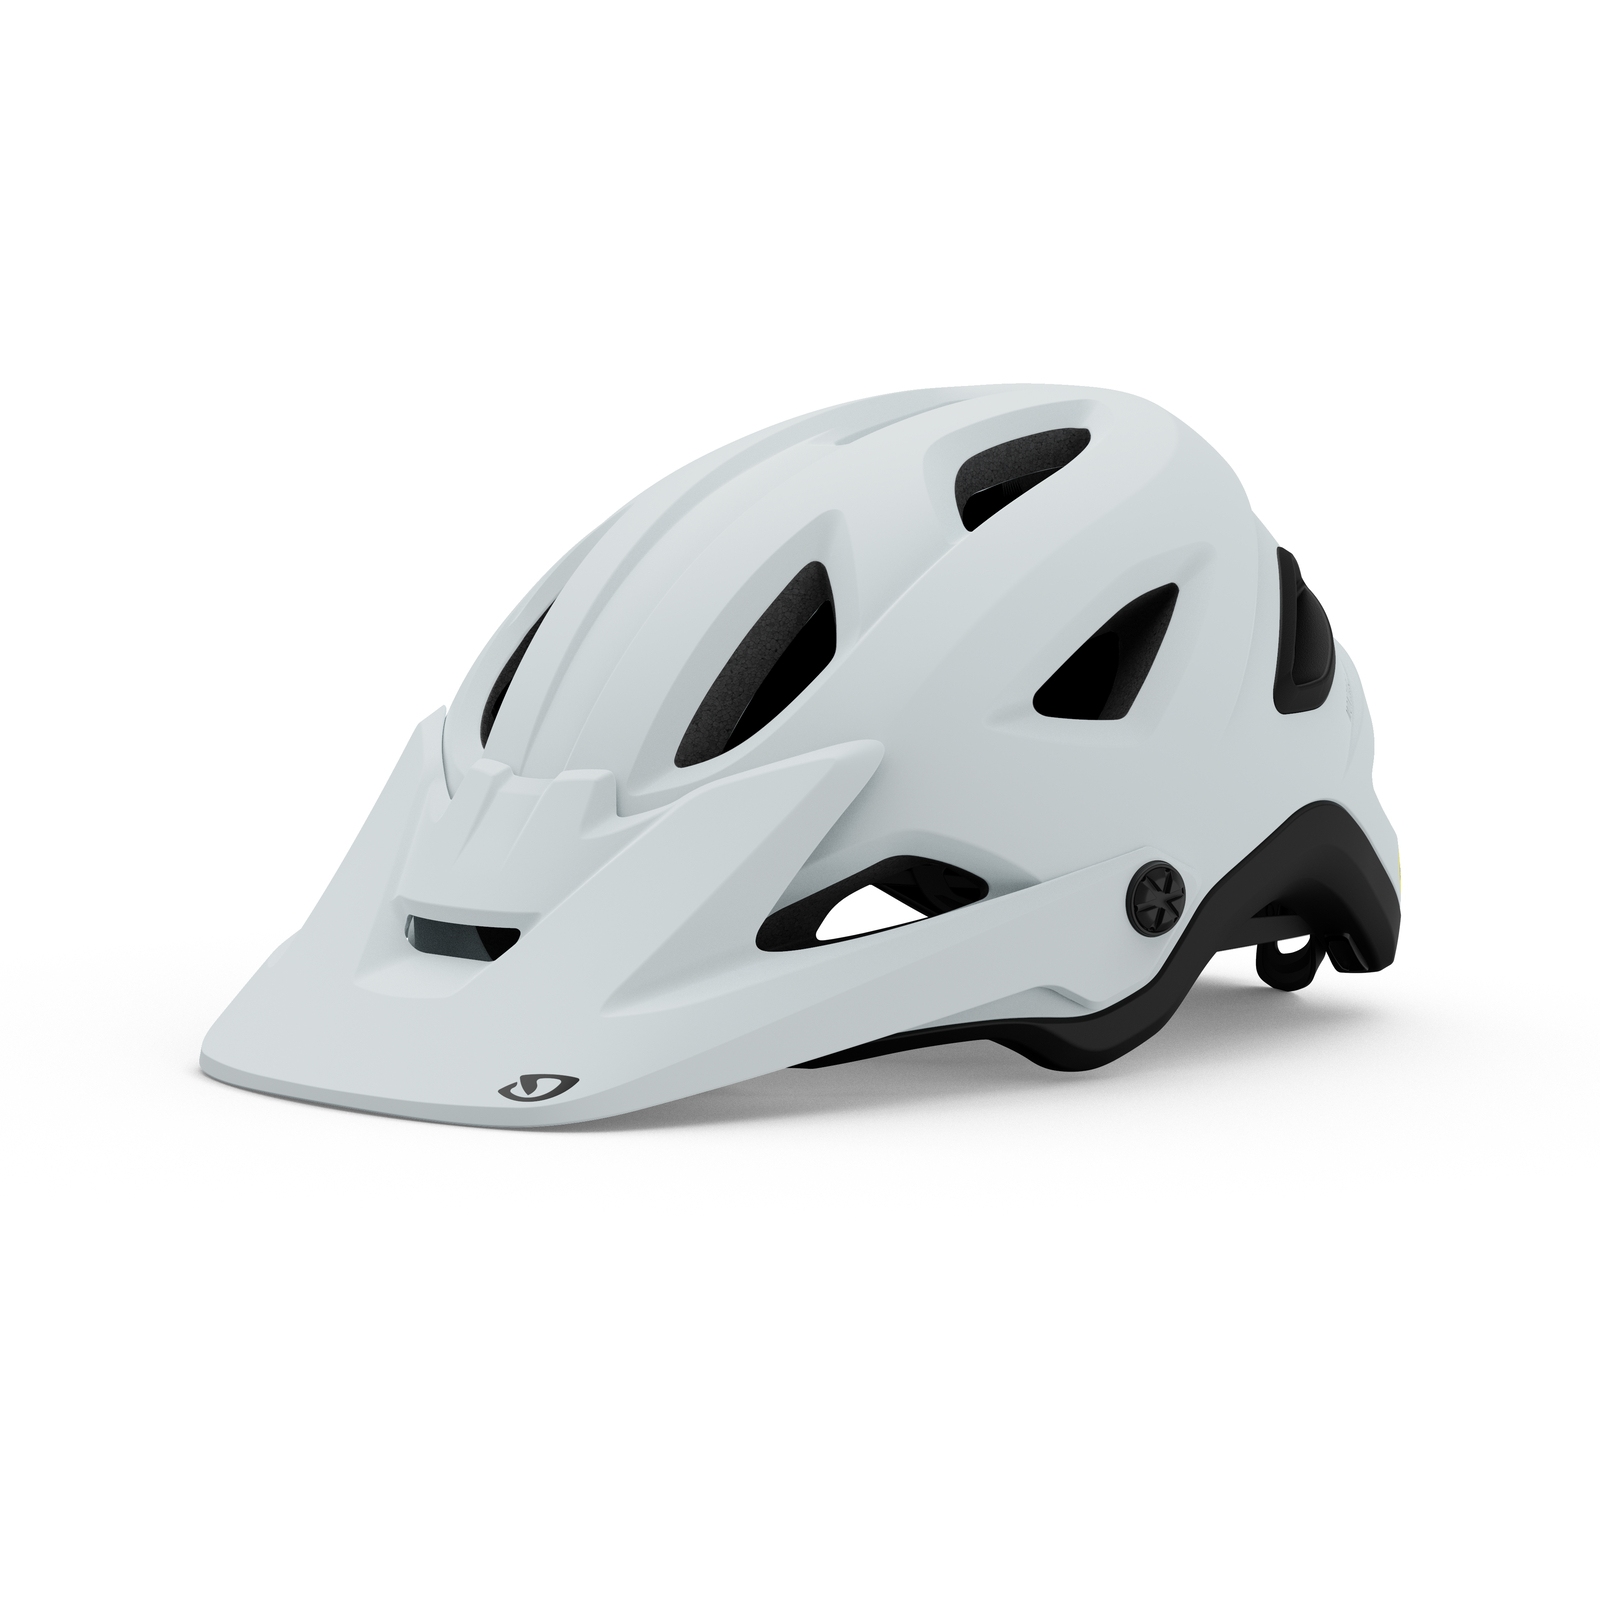 Produktbild von Giro Montaro MIPS II MTB Helm - matte chalk